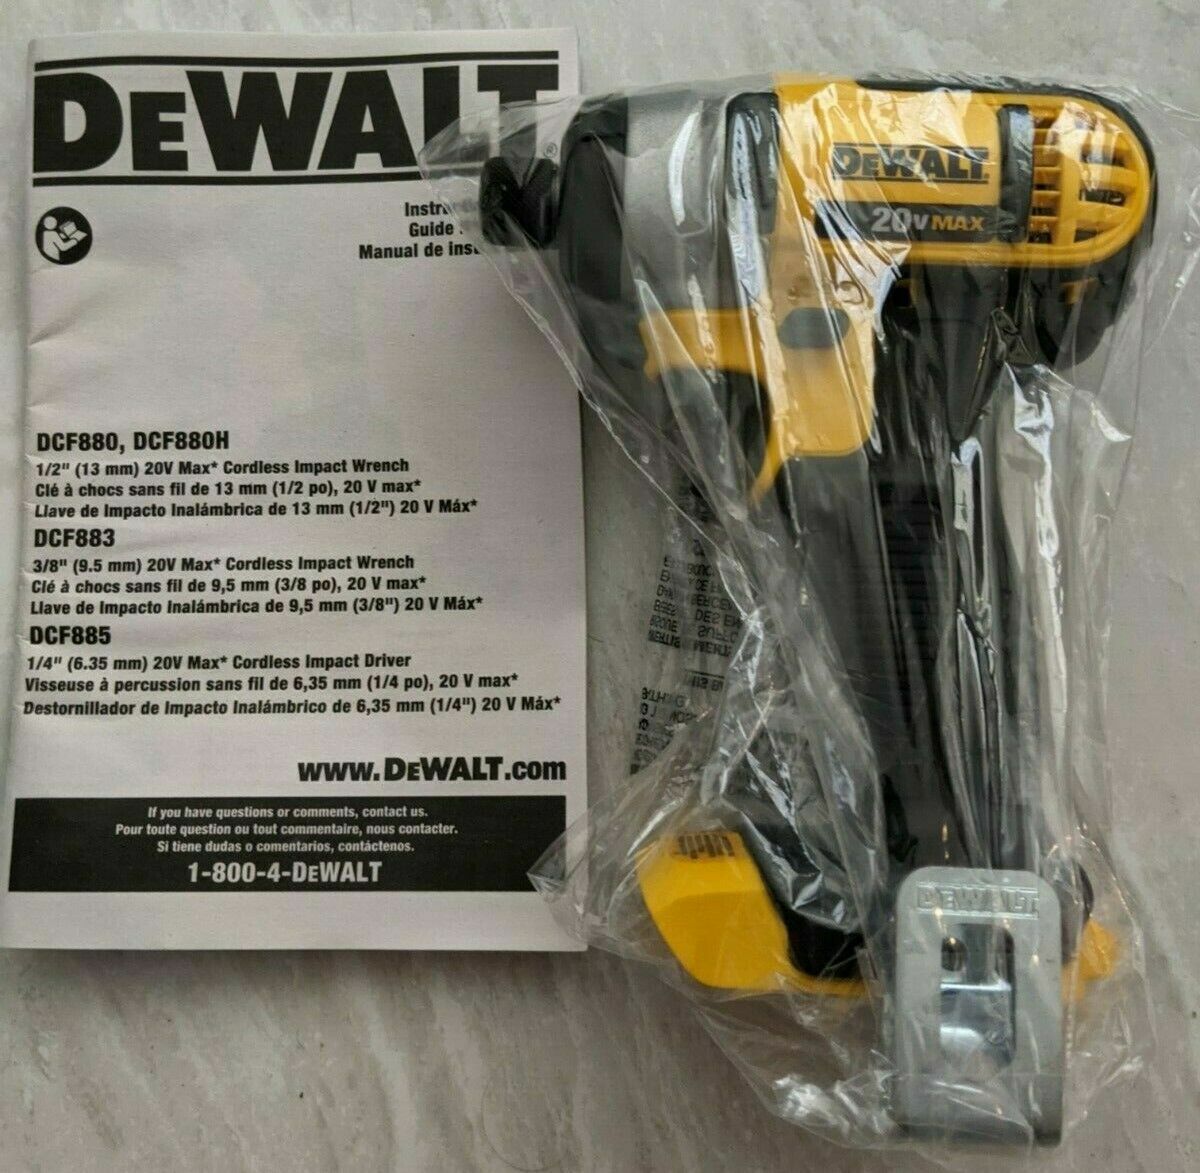 NEW!!! DEWALT DCF885B 20V 1/4 in. Impact Driver - Black/Yellow (Tool Only) DEWALT DCF885B - фотография #6